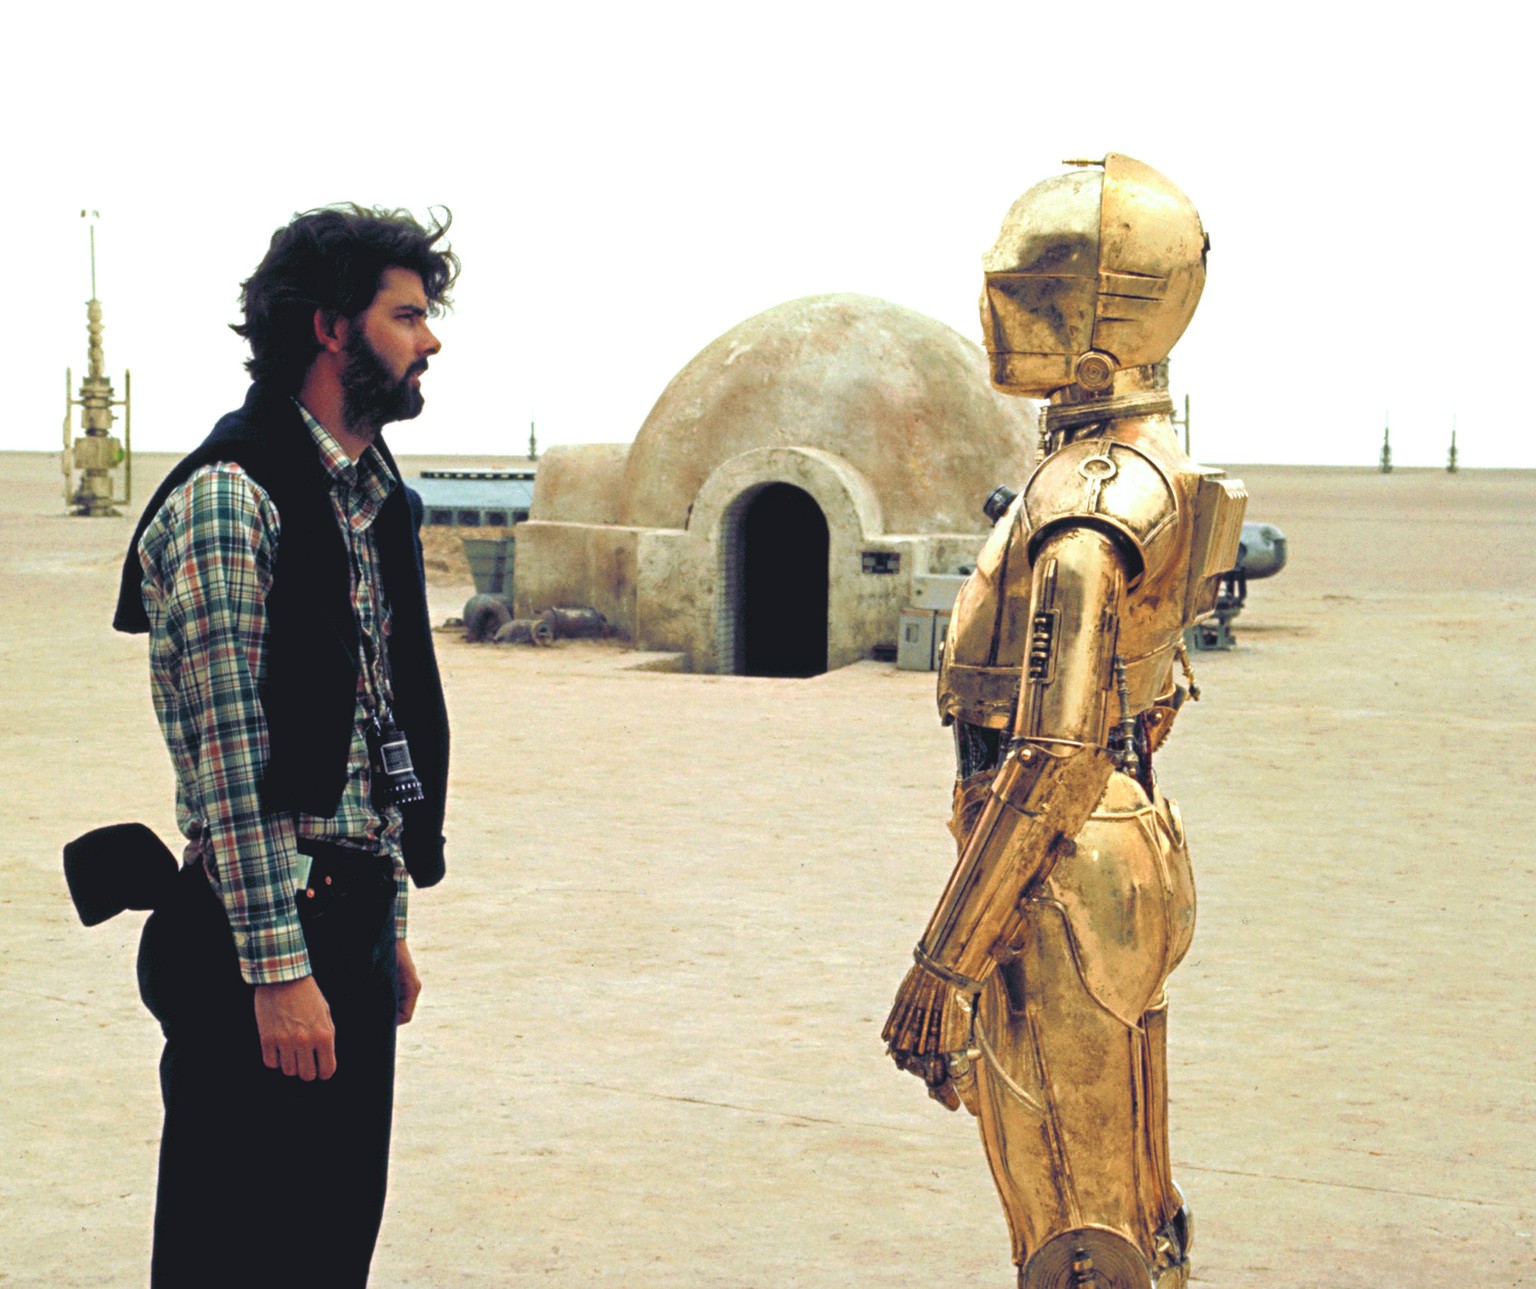 ... <a target="_blank" rel="nofollow" href="https://www.atlasobscura.com/places/lars-homestead">Nefta in der tunesischen Wüste</a>, die 1976 als Drehort für Luke Skywalkers Heimatplaneten Tatooine diente. 